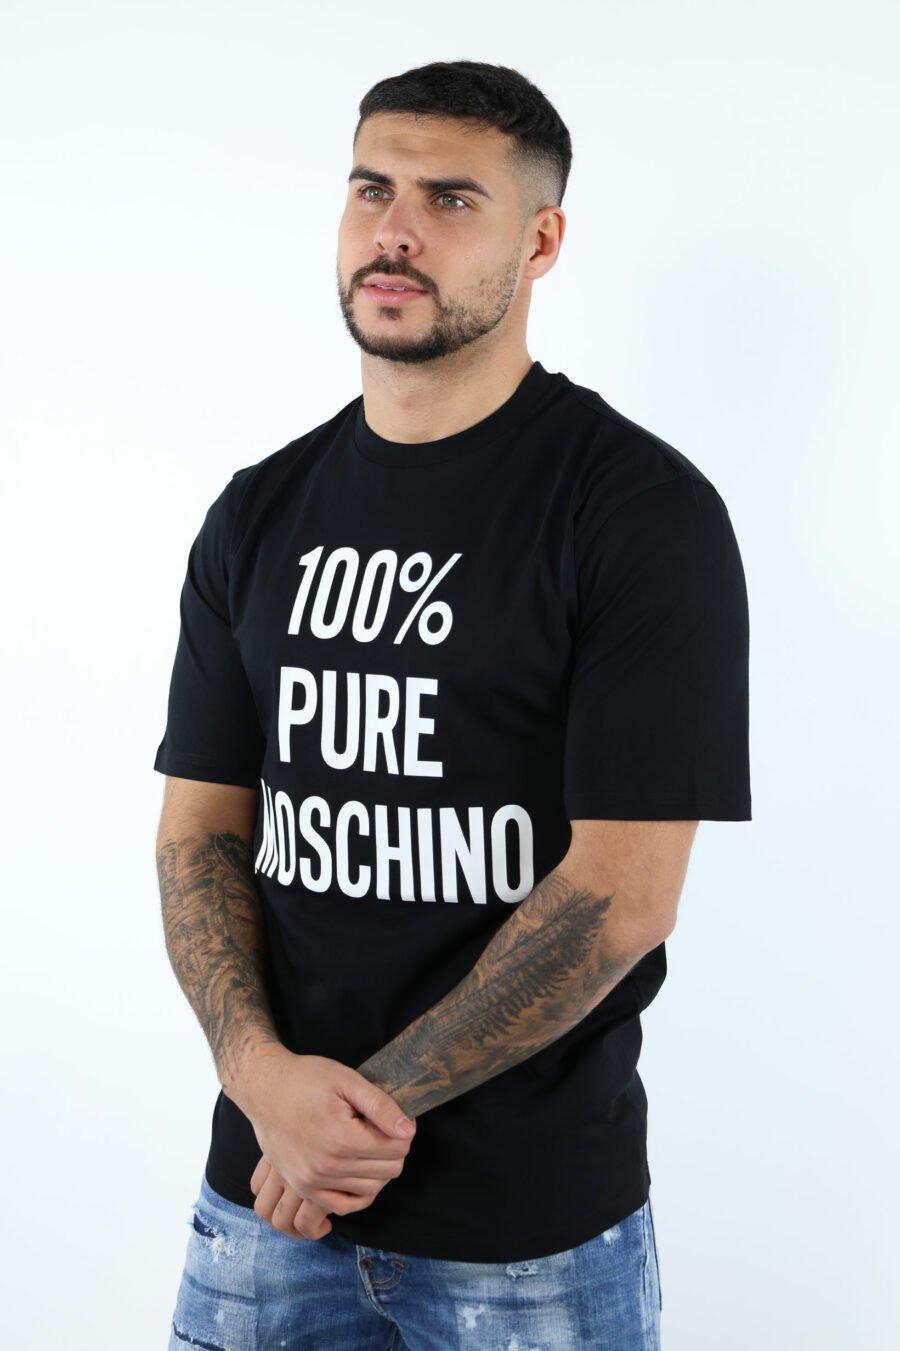 Camiseta negra de algodón orgánico "100% pure moschino" - 106942